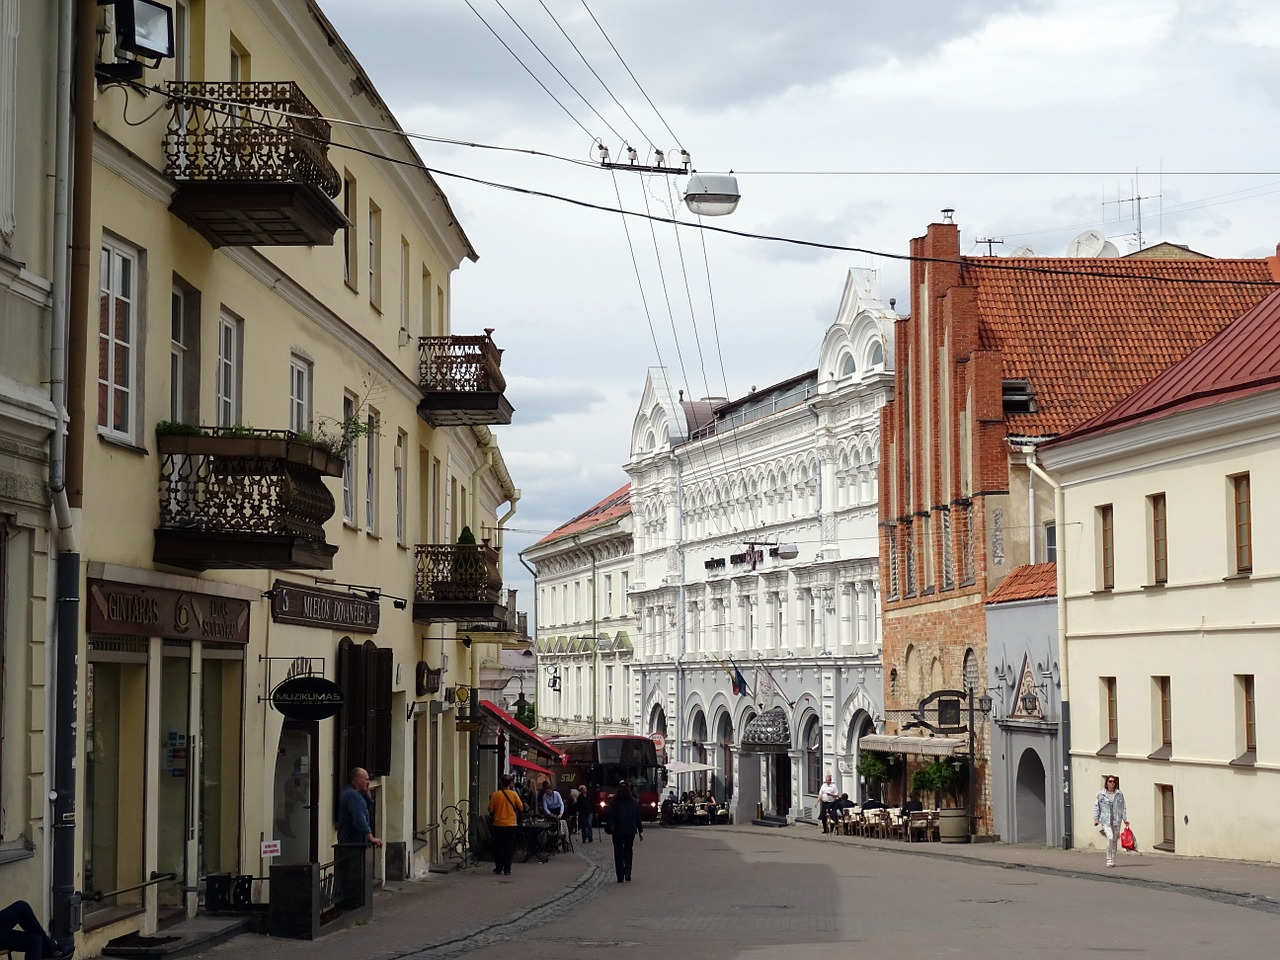 Vilnius (Photo: wearetravelgirls.com)